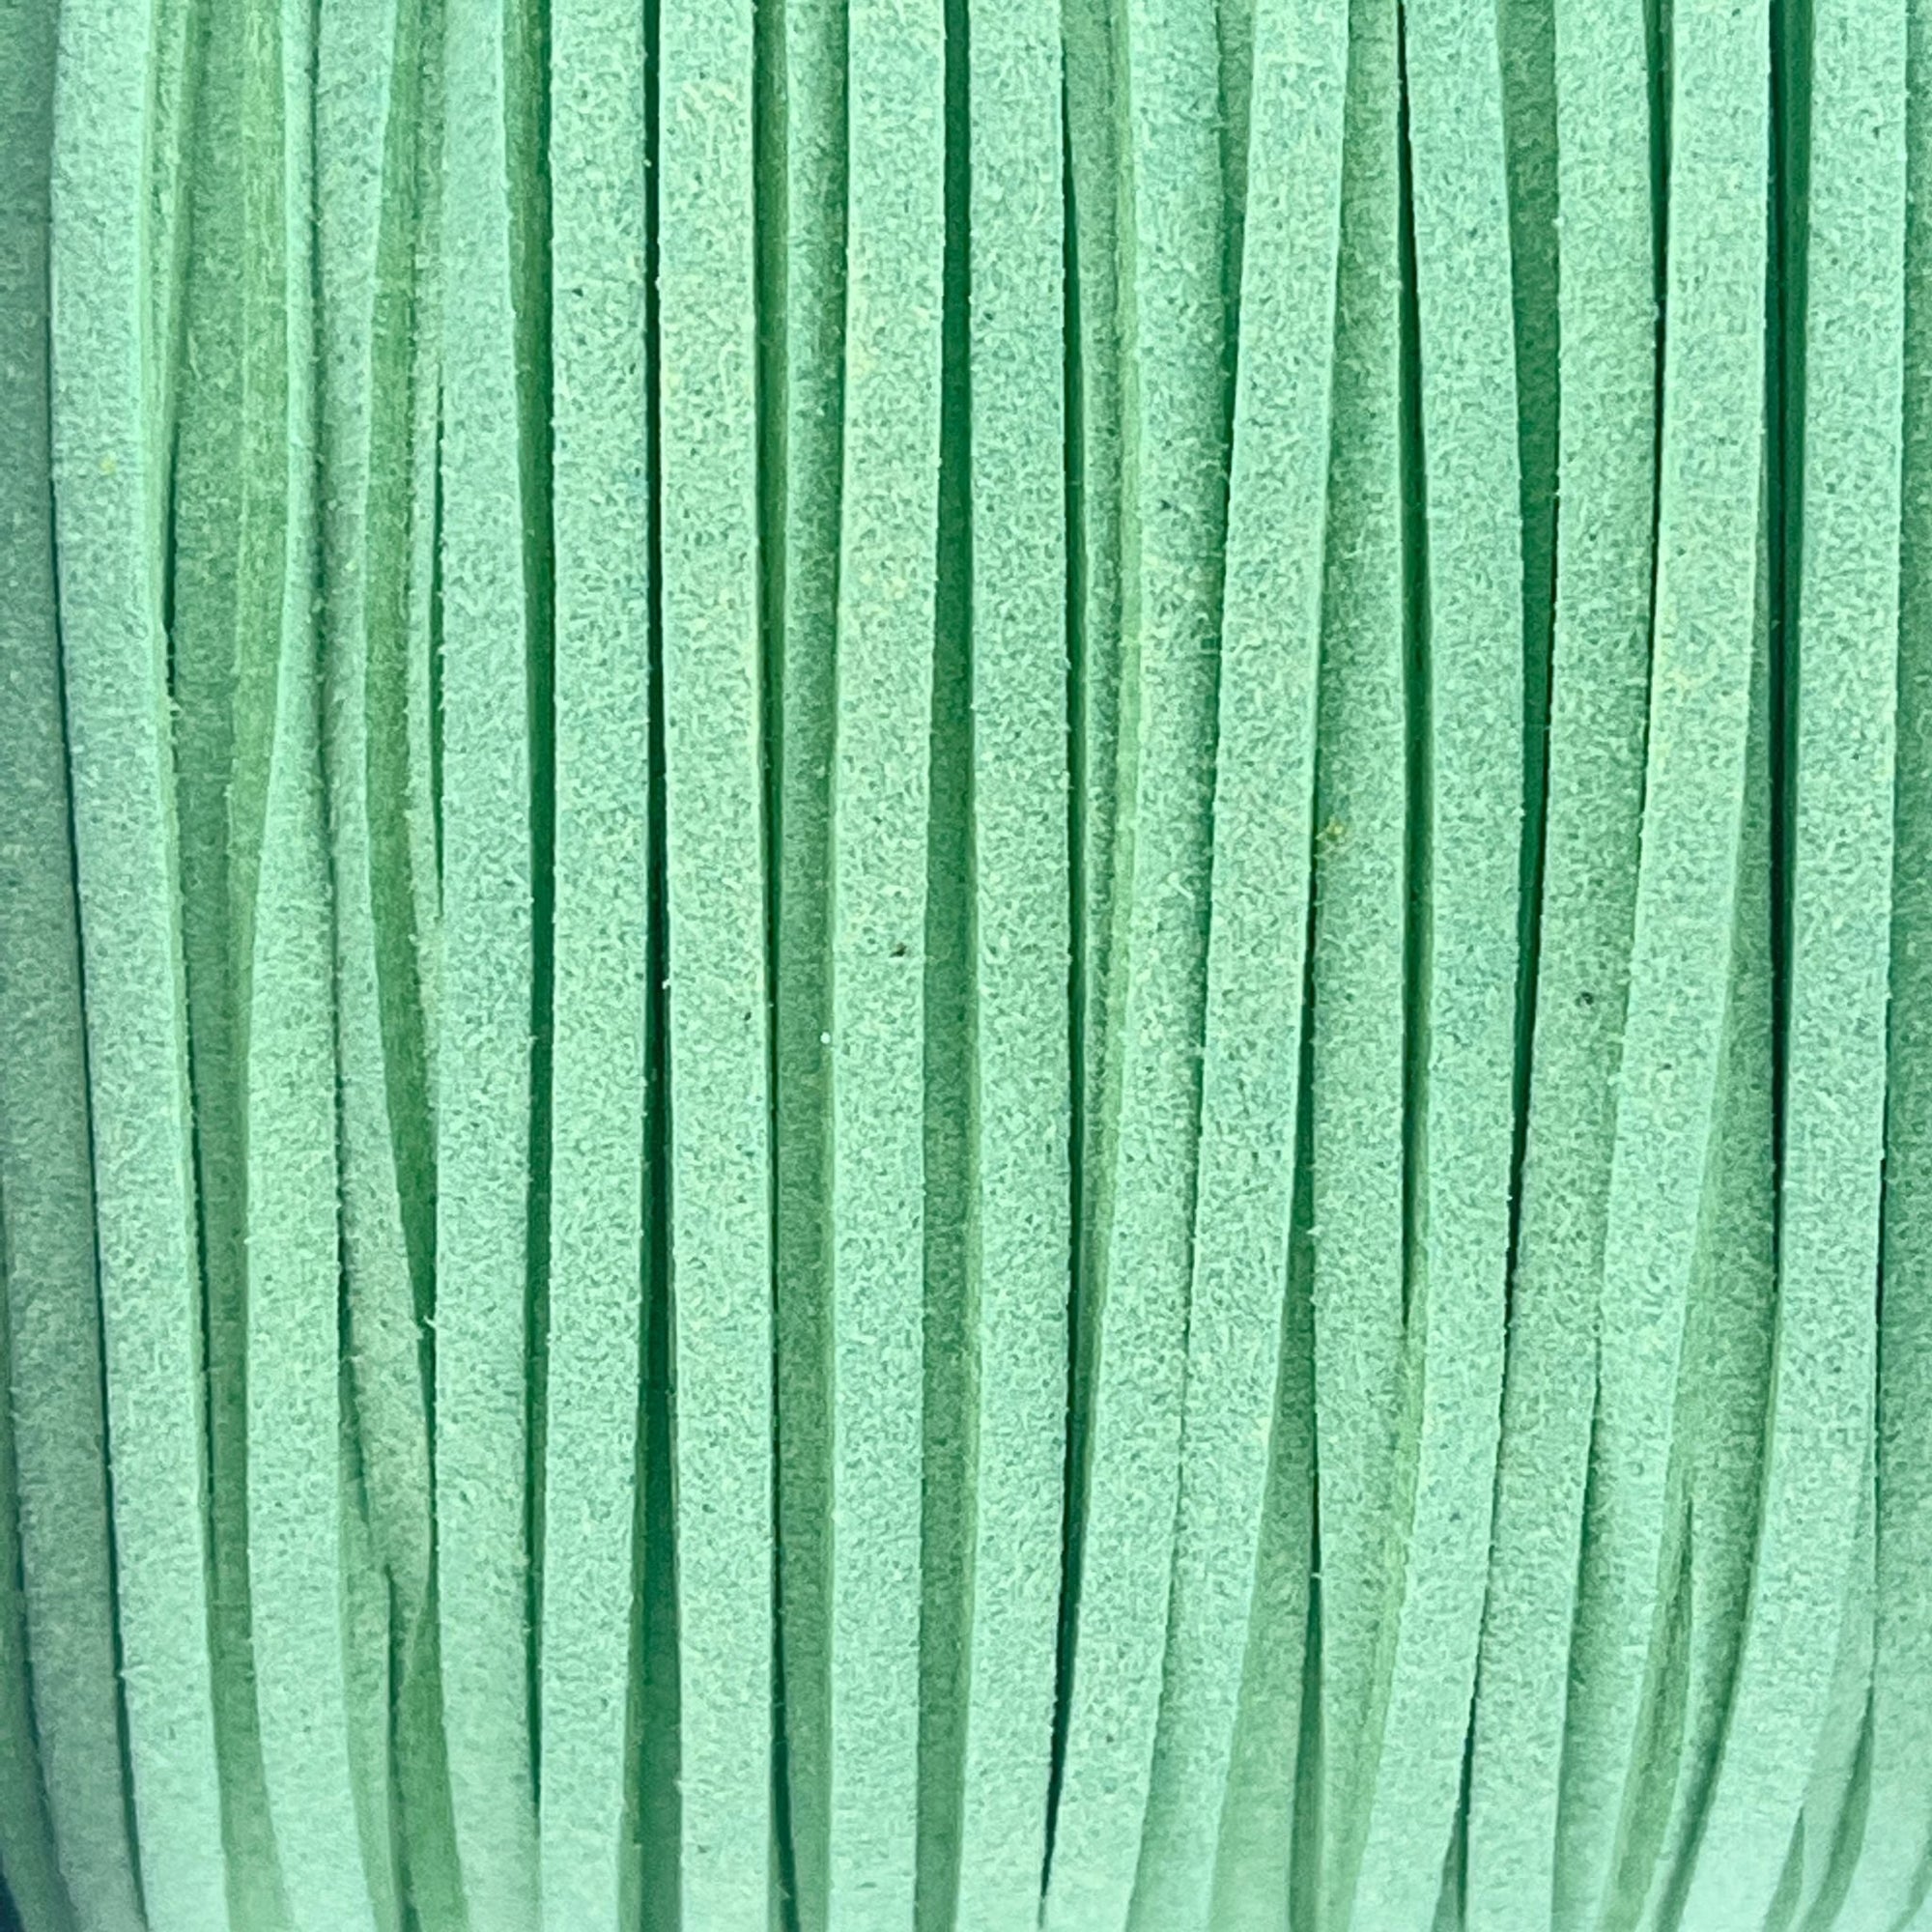 Imitatie suede turquoise zeegroen 3x1,5mm - 2 meter-koord-Kraaltjes van Renate